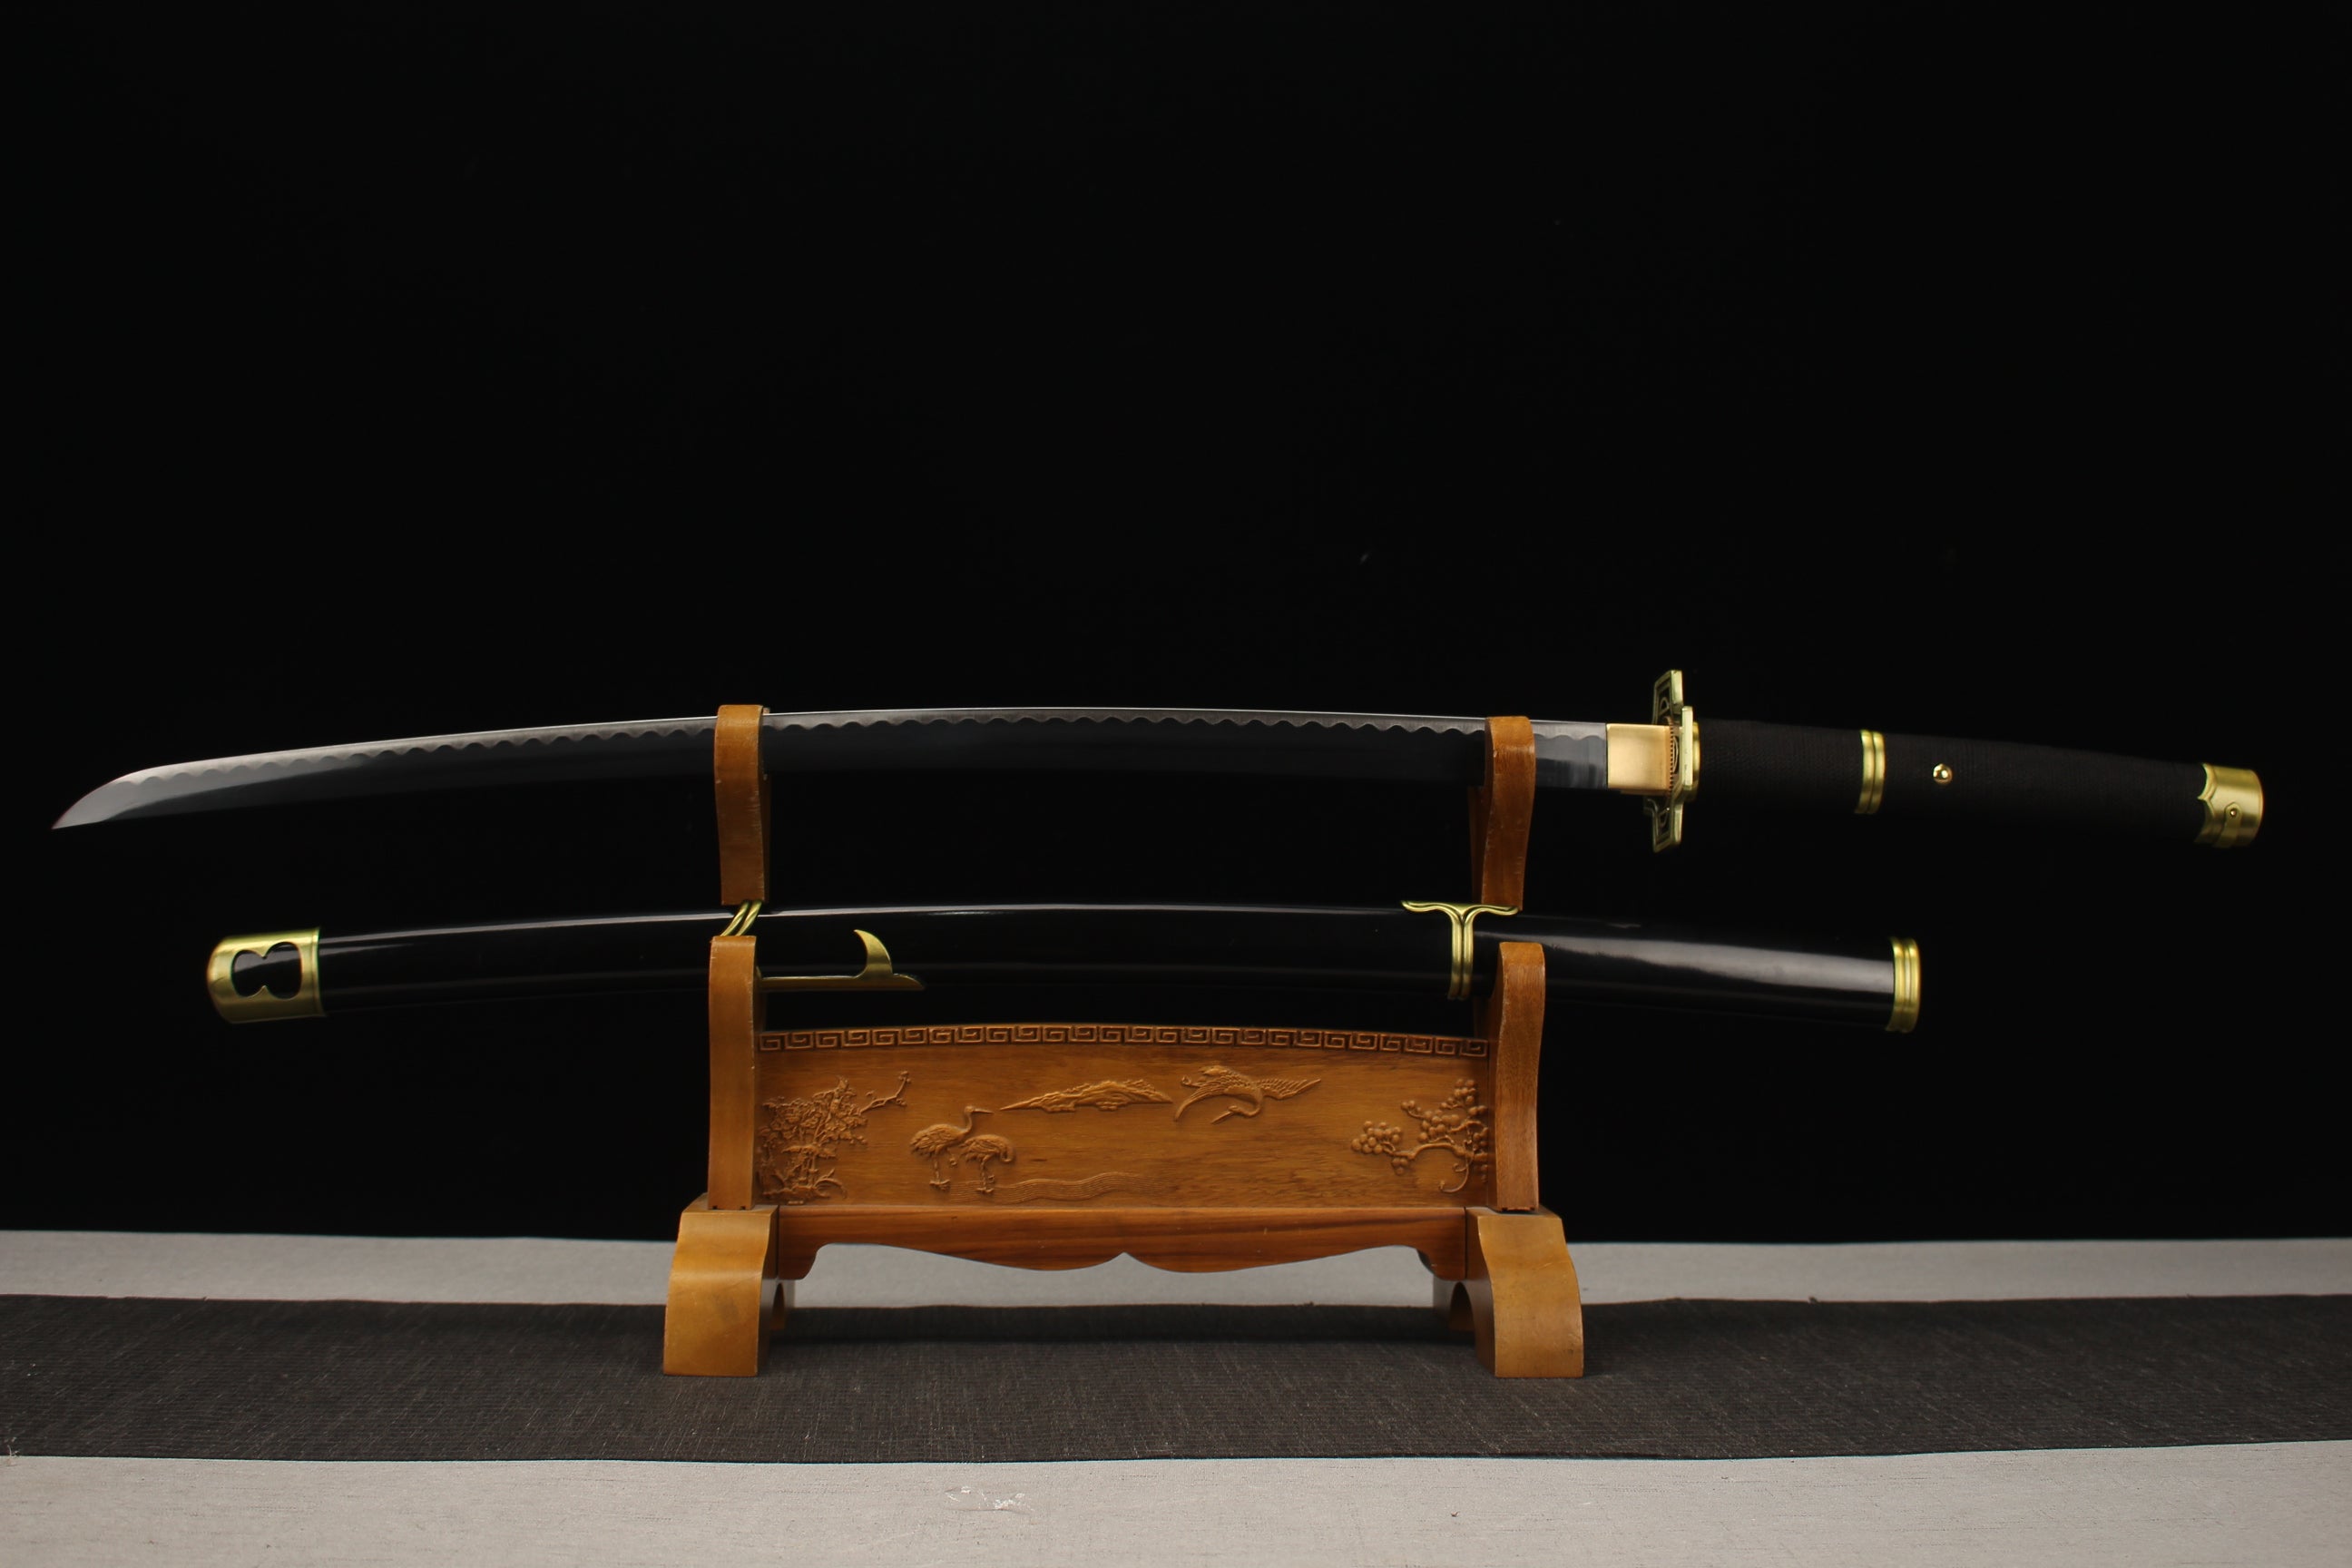 Yubashiri, Einteiler, Anime-Version Katana, japanisches Samurai-Schwert, Kohlenstoffstahl, Longquan-Schwert